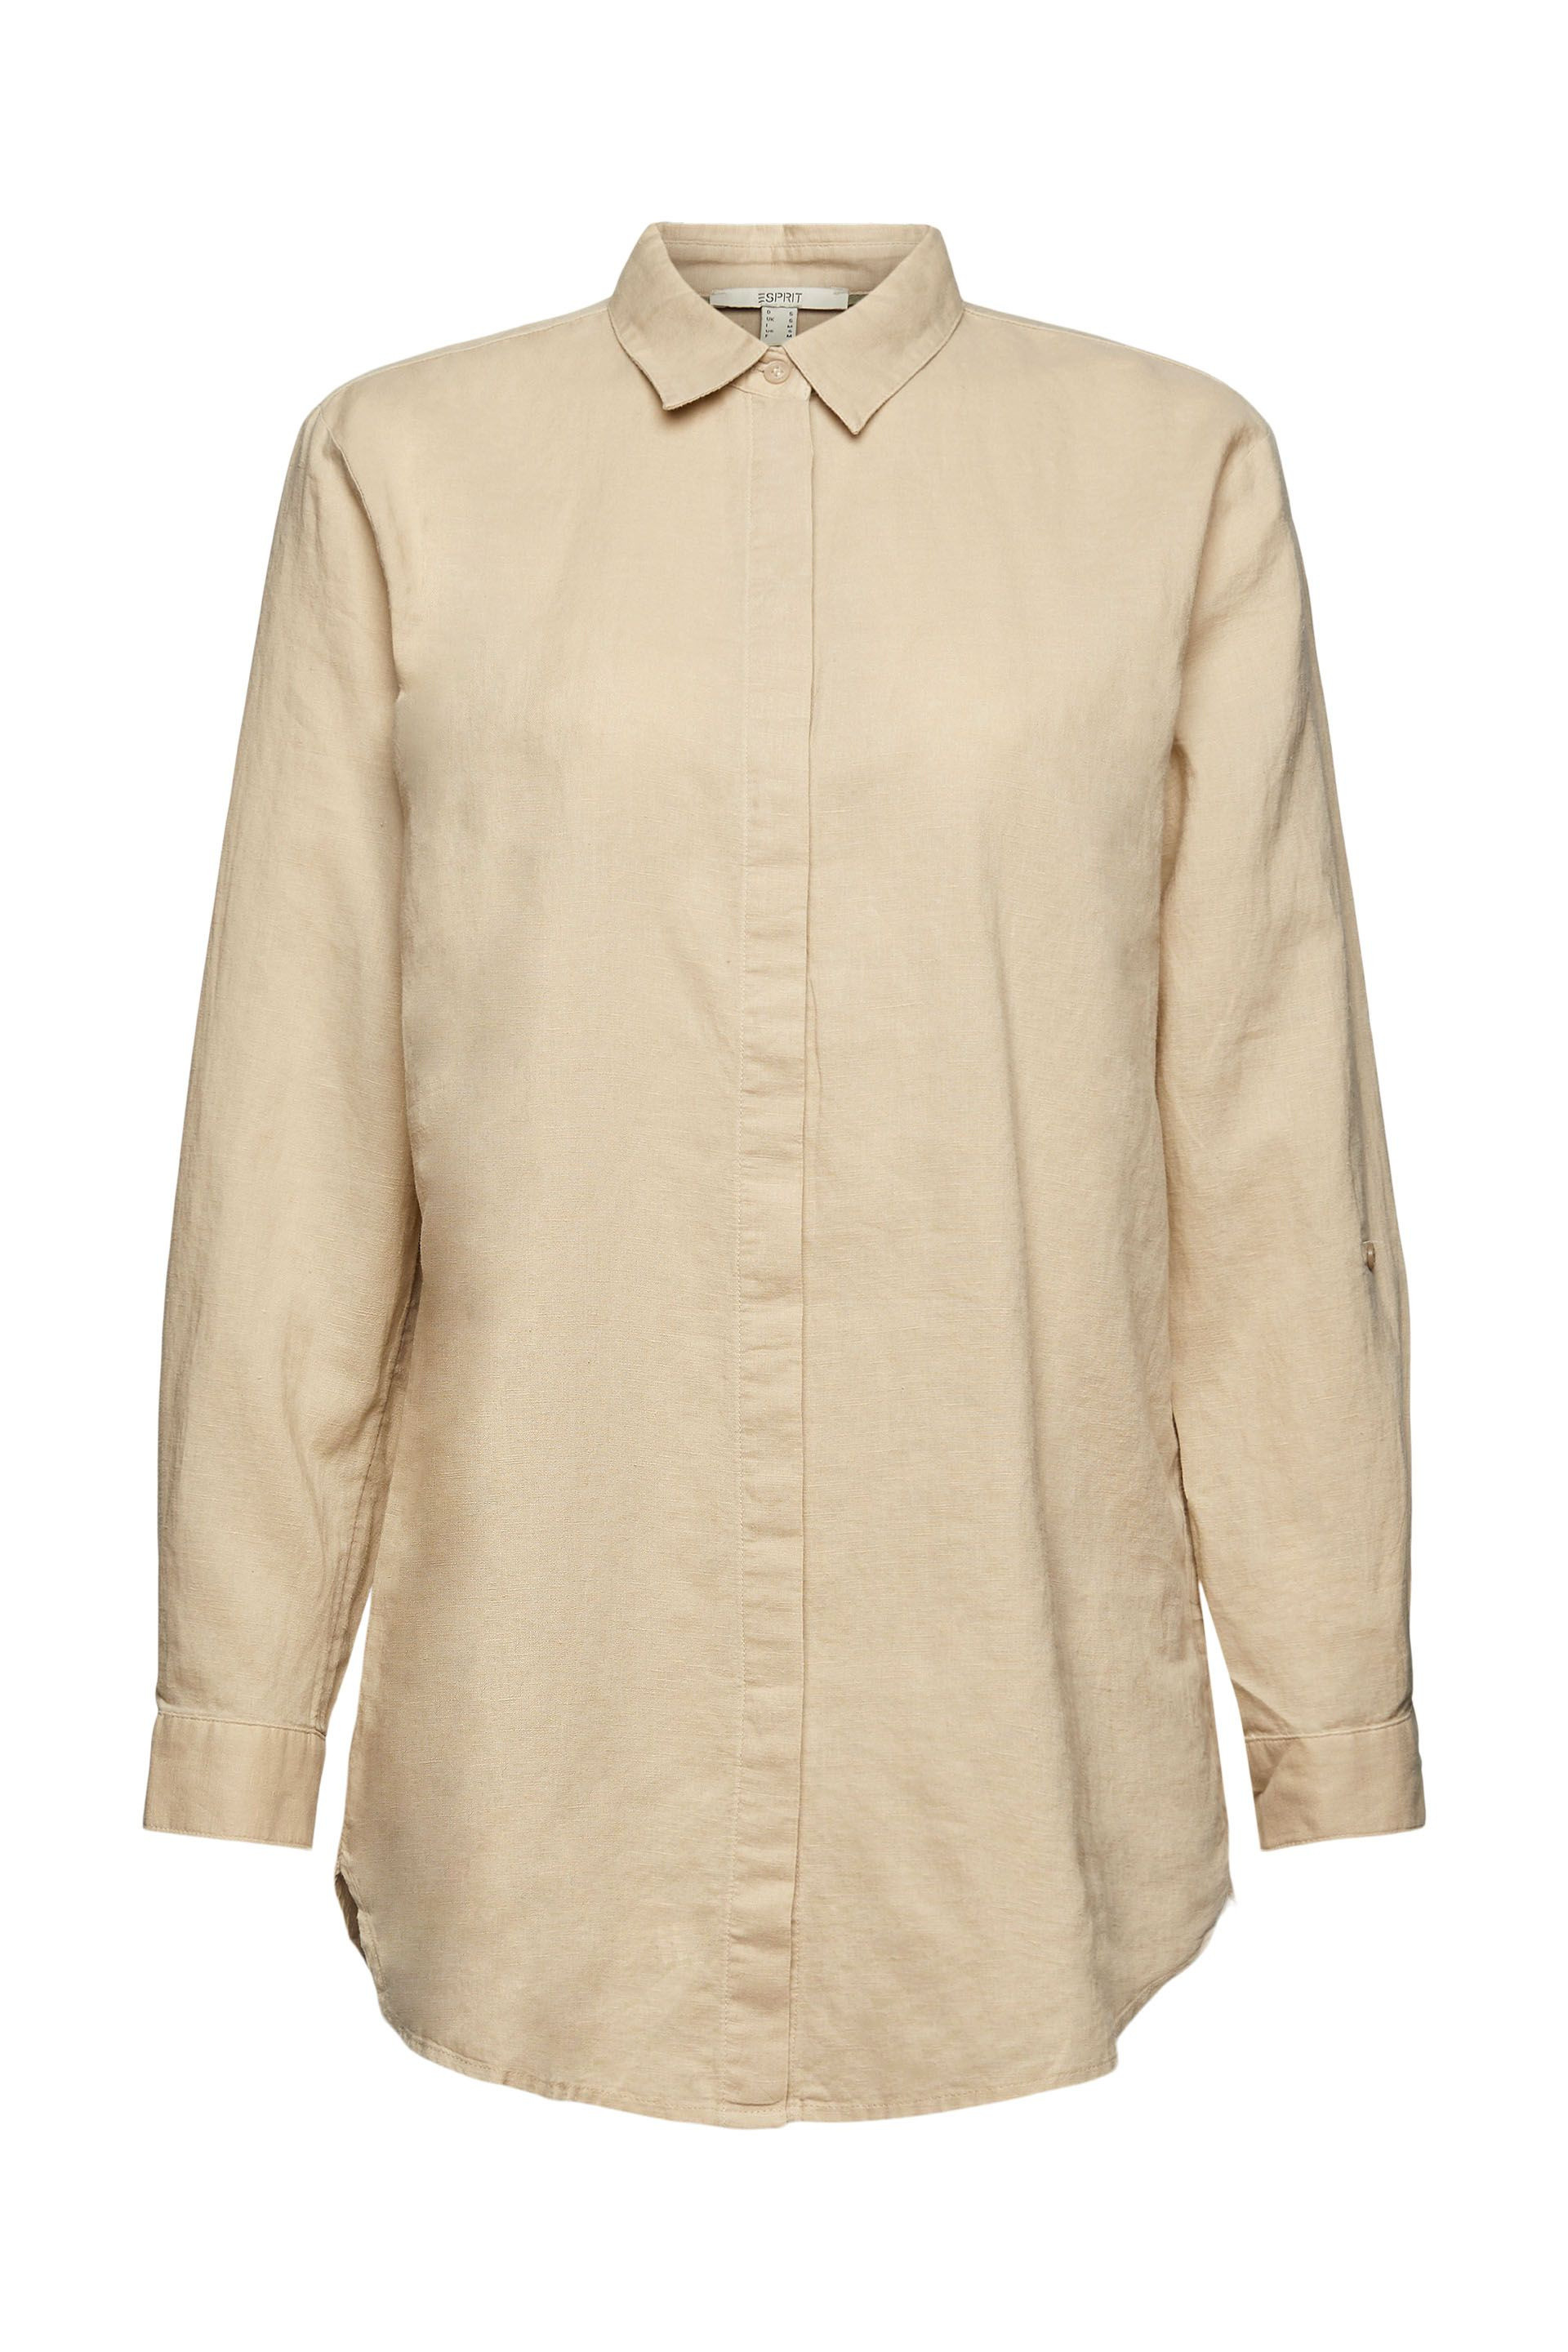 Linen blend shirt, Beige, large image number 0